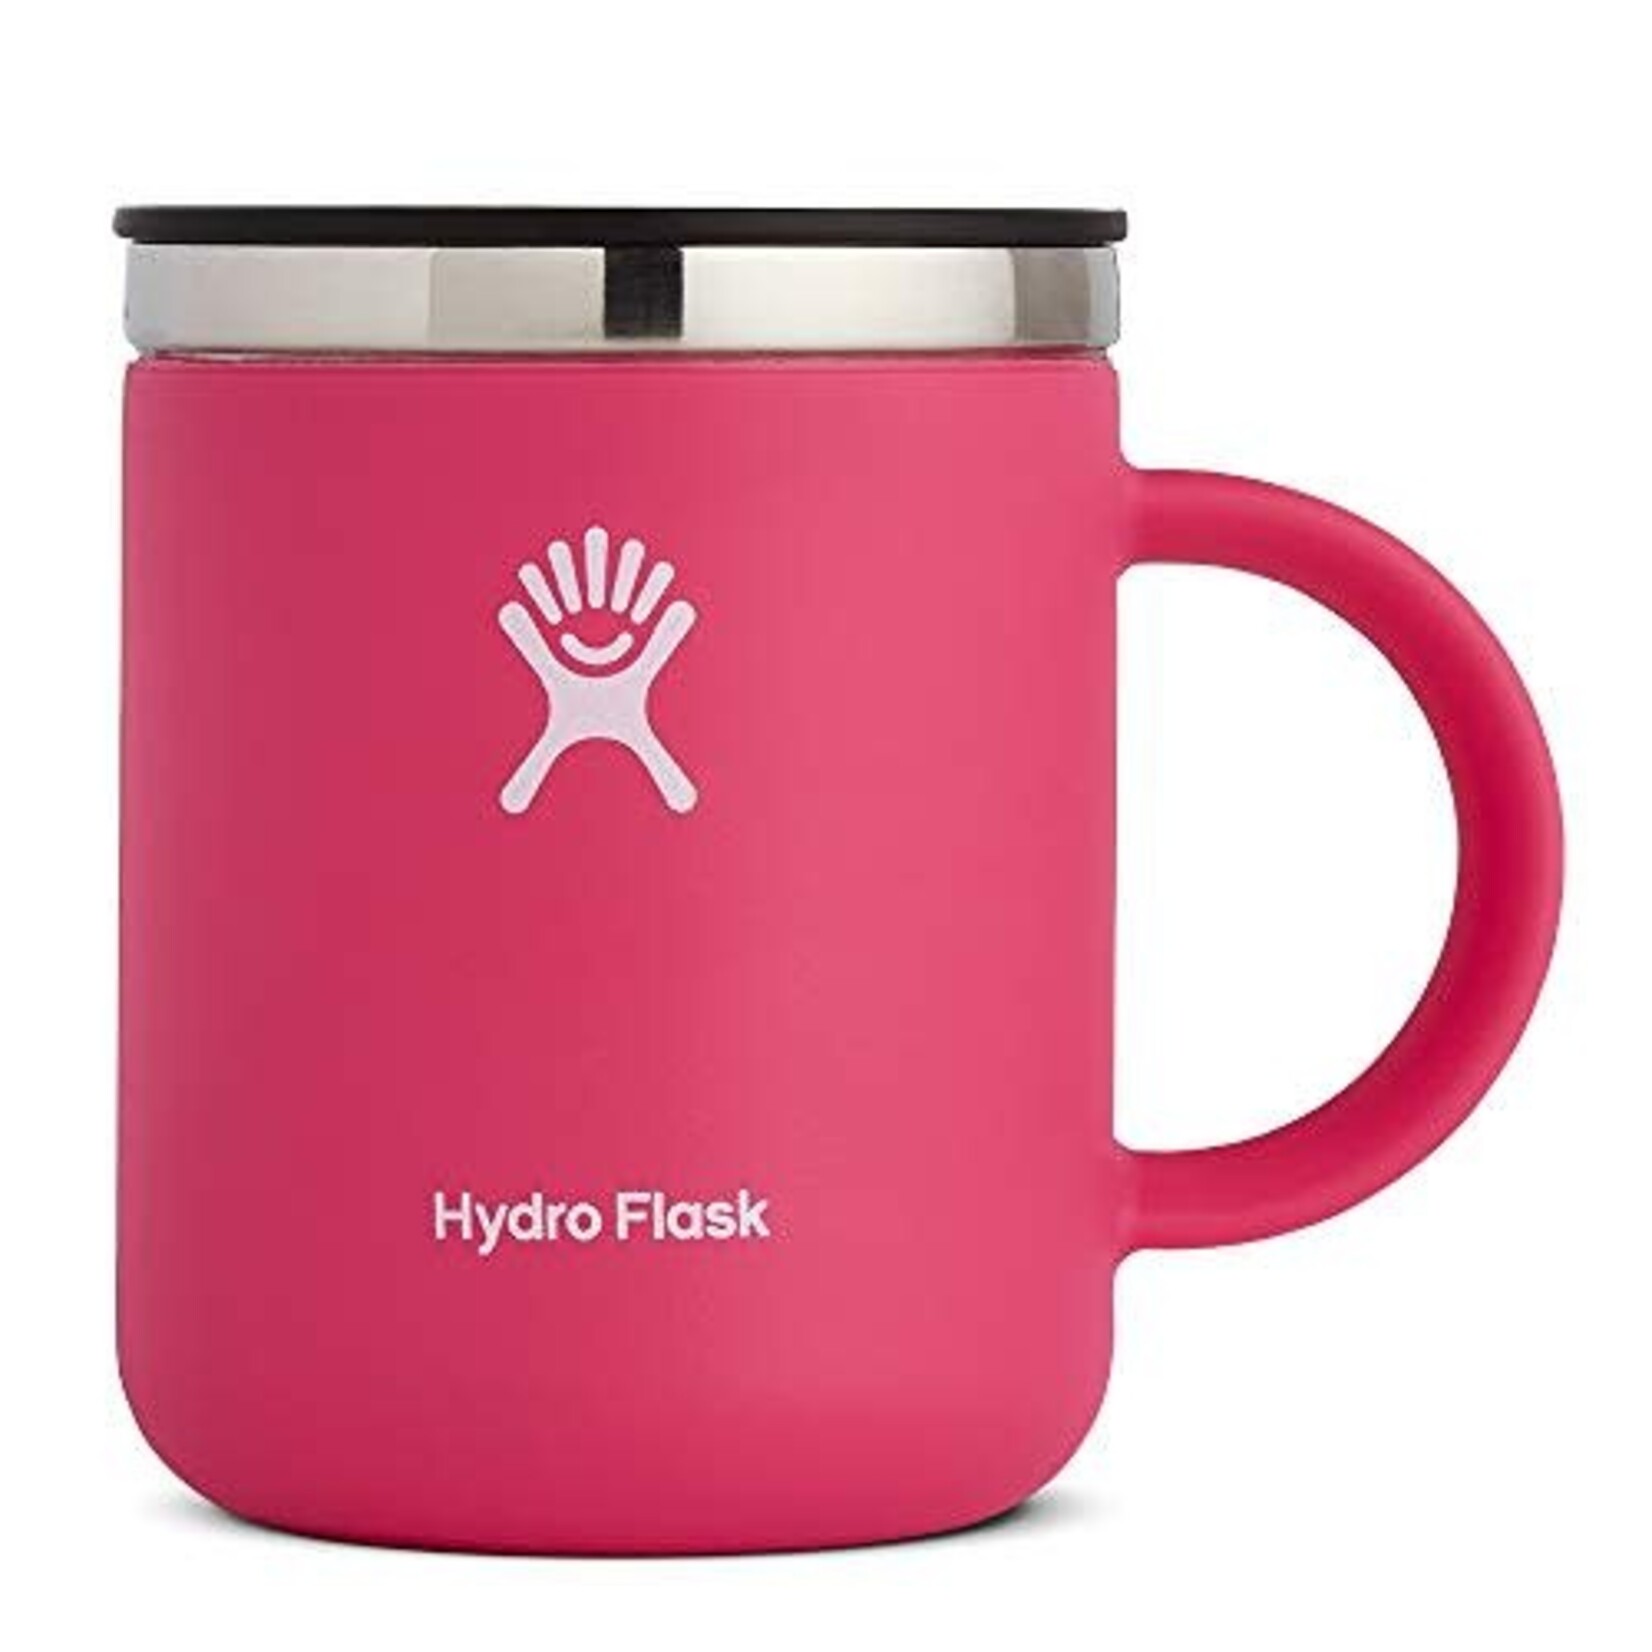 HYDROFLASK Hydro Flask 12 OZ Coffe Mug